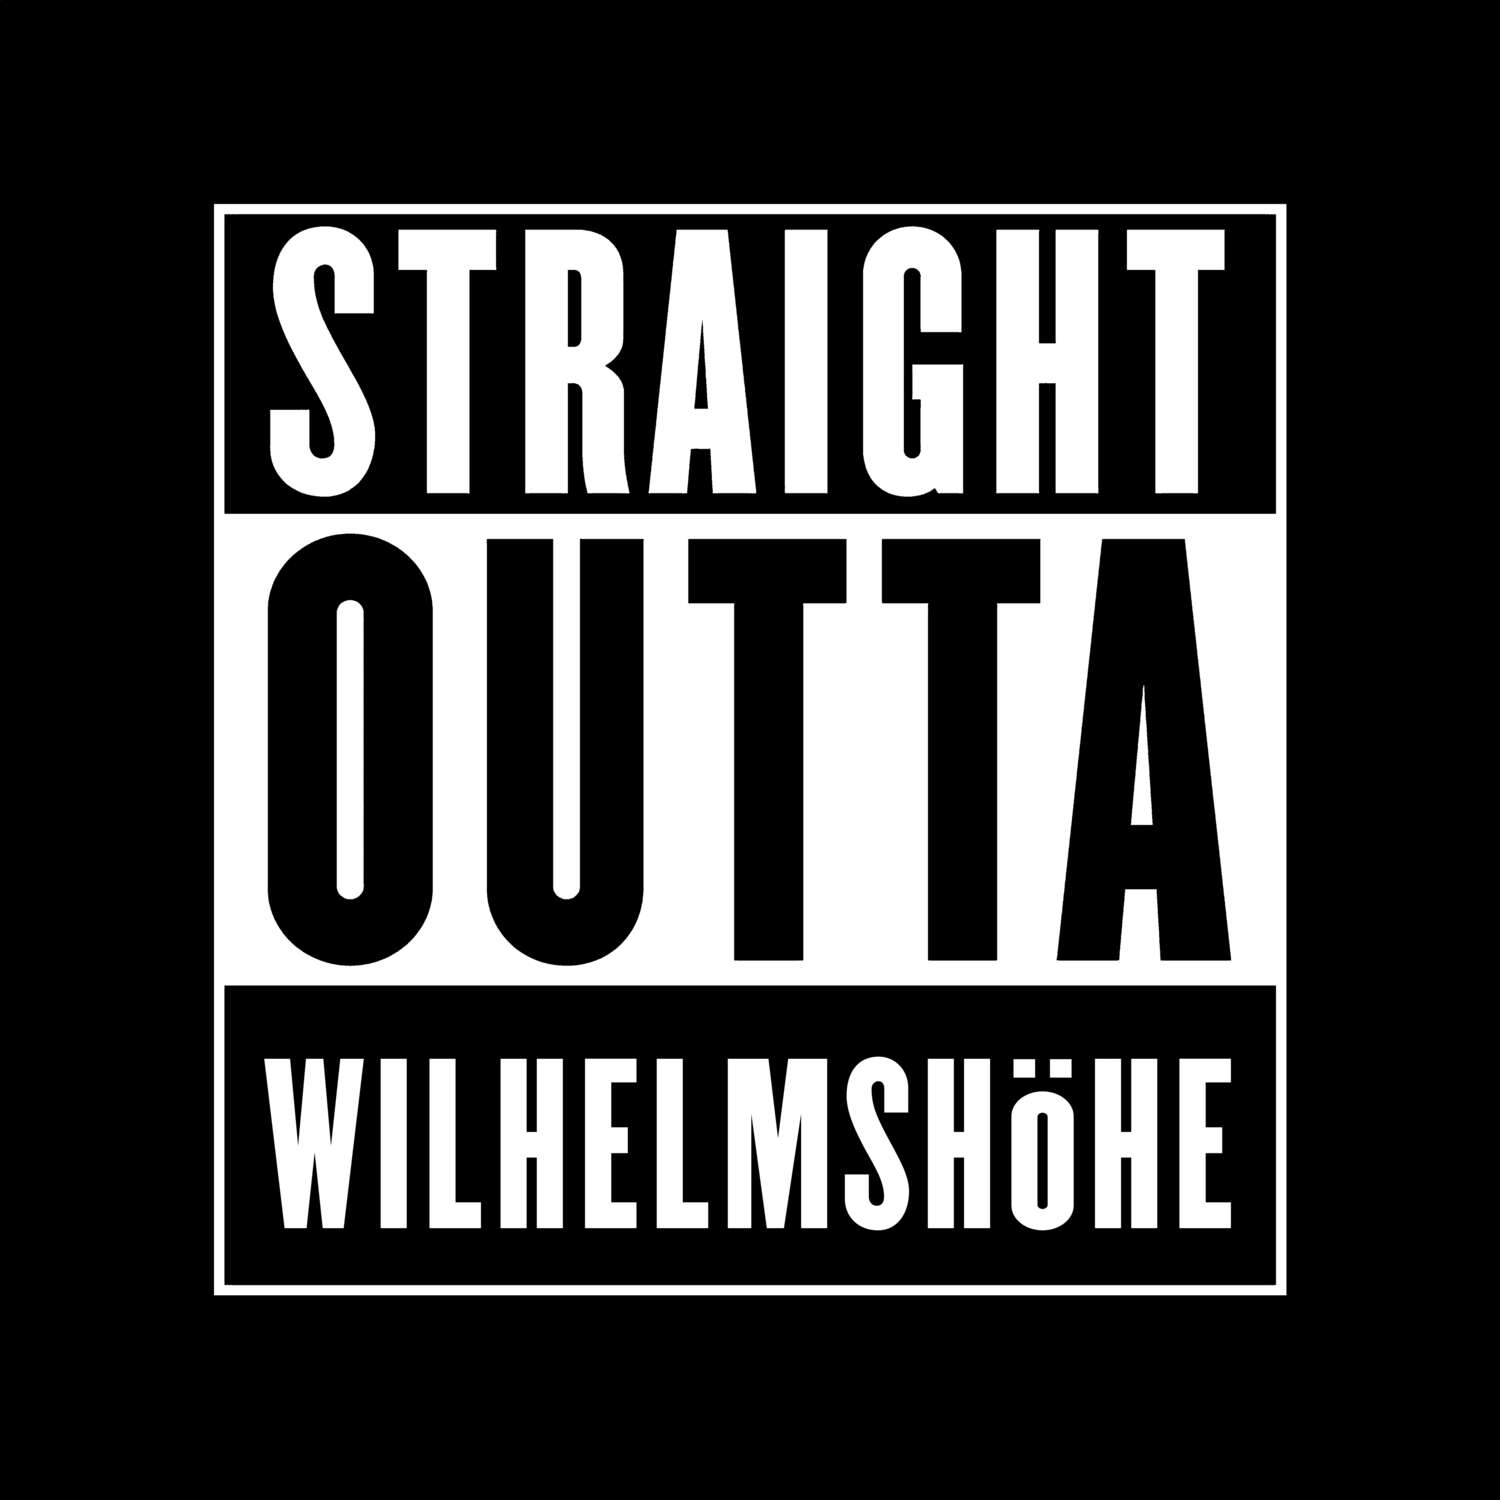 Wilhelmshöhe T-Shirt »Straight Outta«